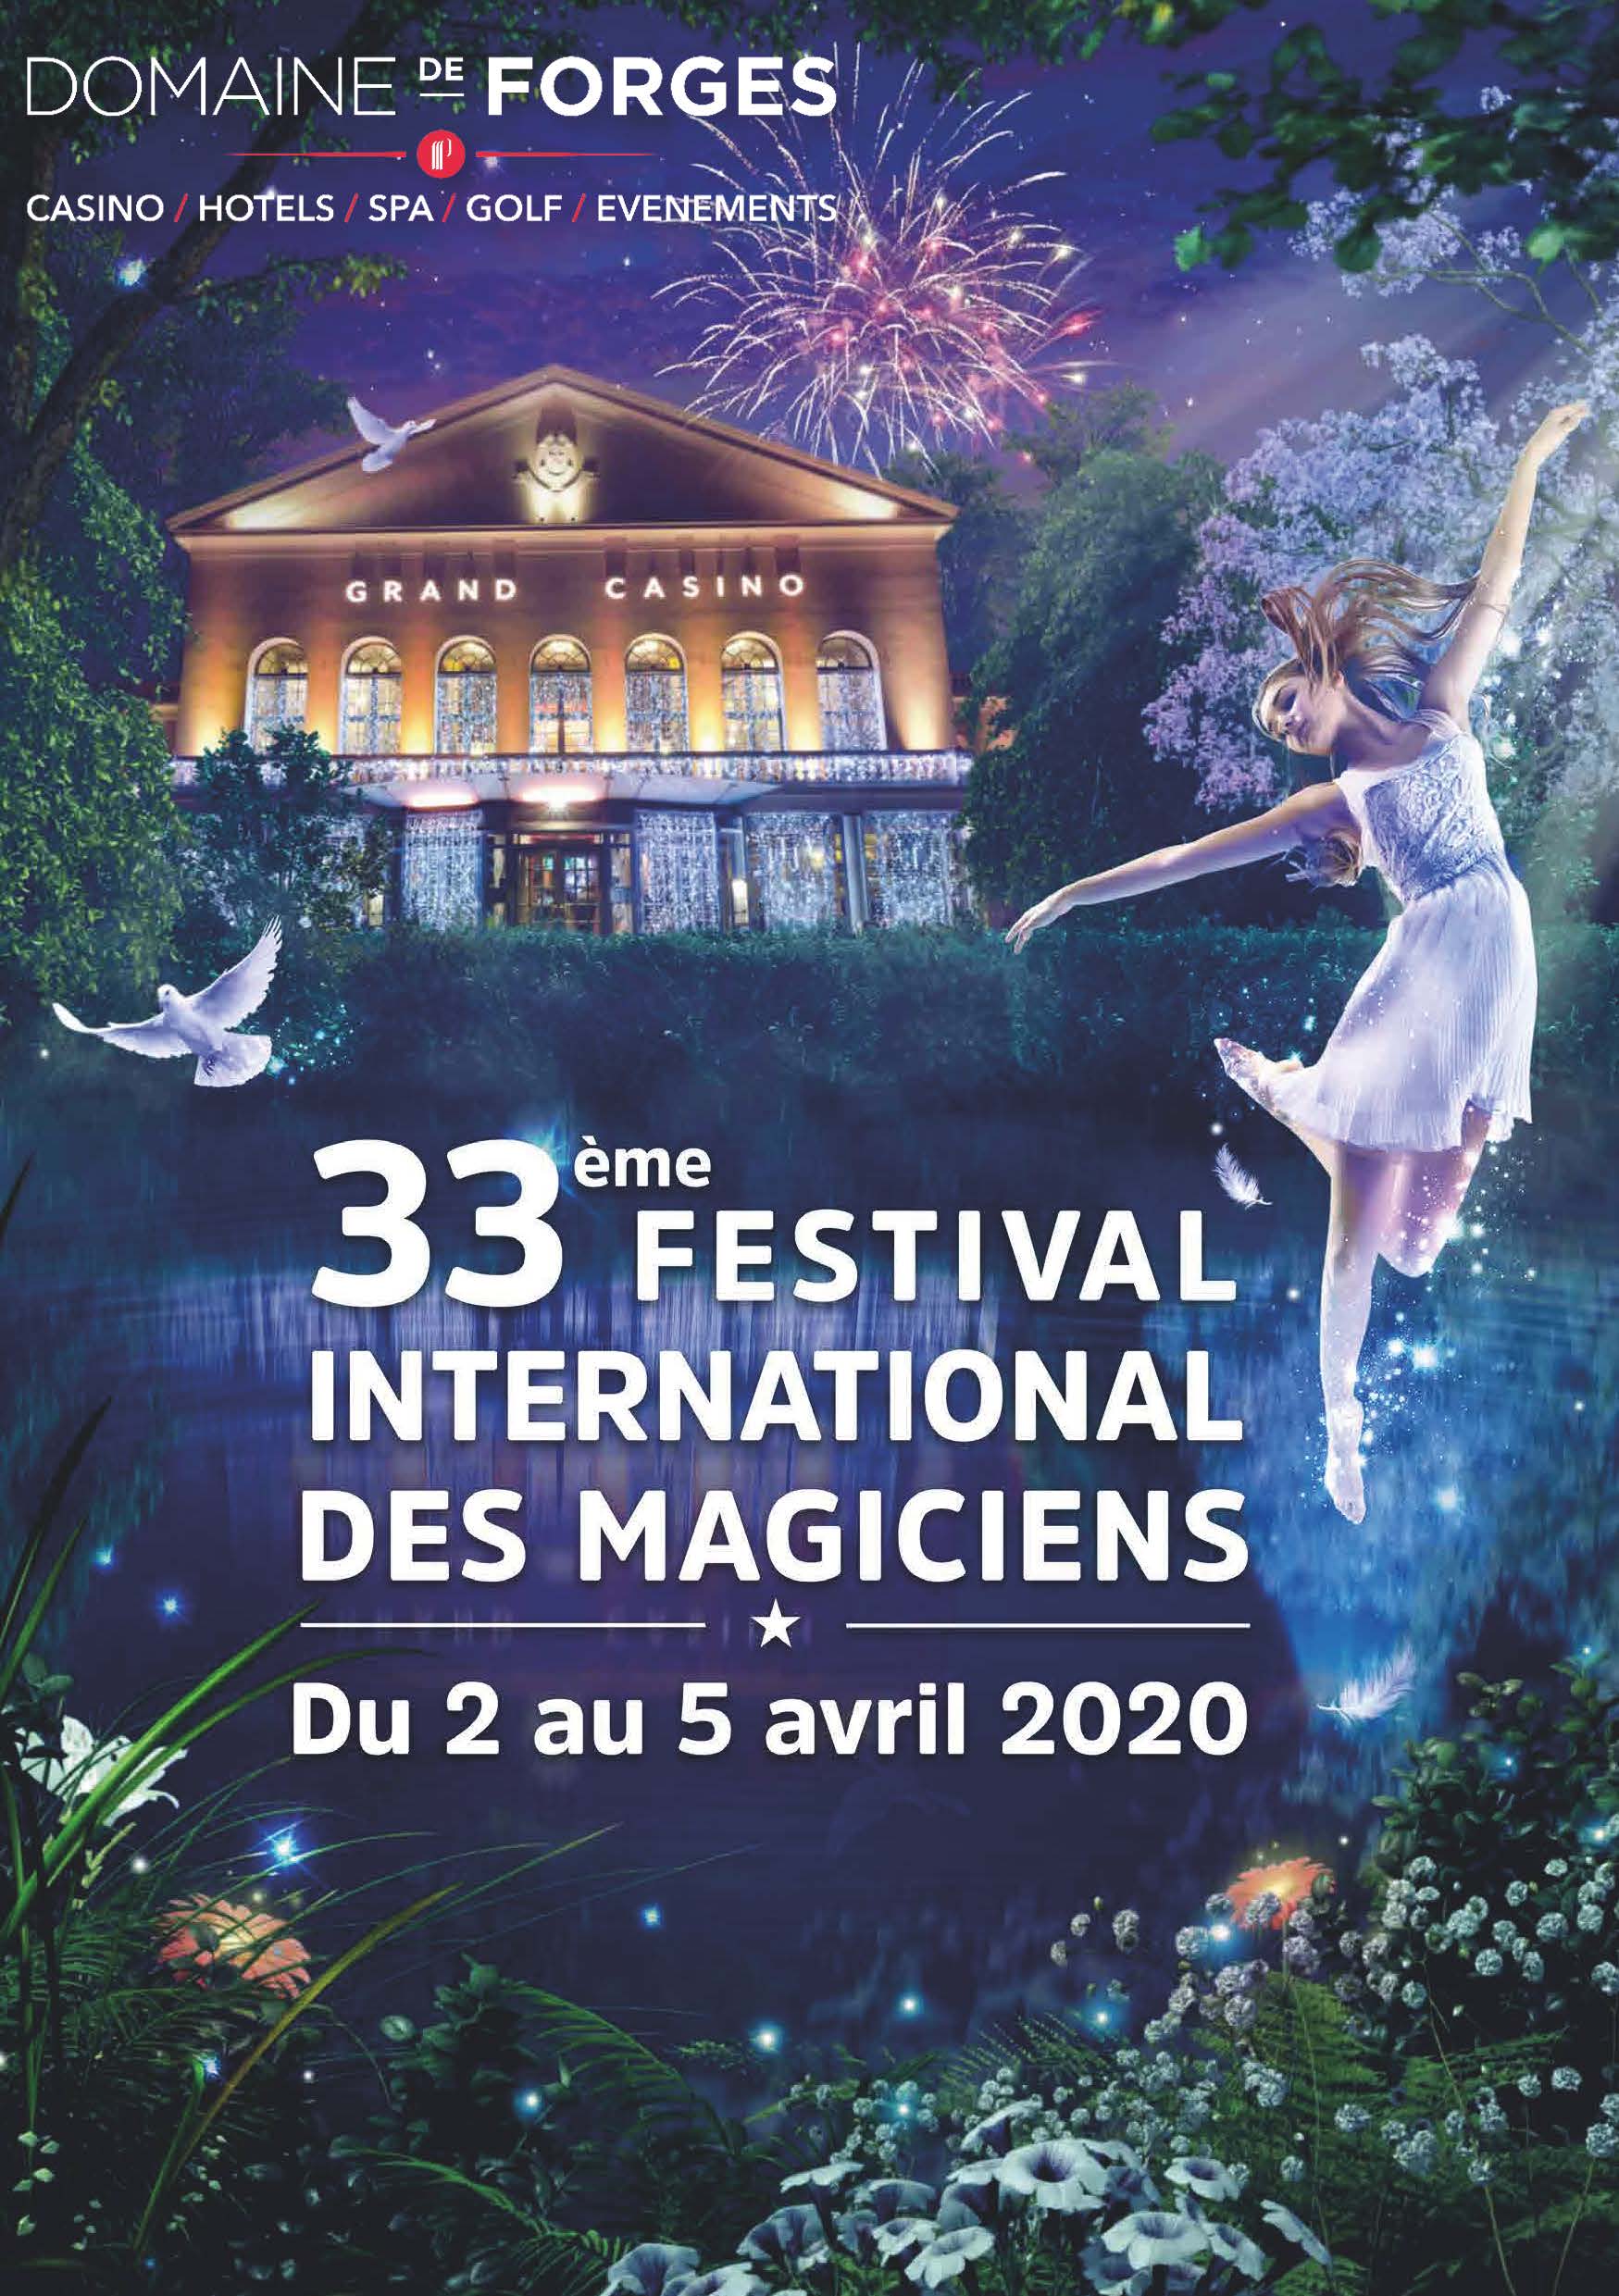 33 ème FESTIVAL INTERNA DES MAGICIEN Magic News